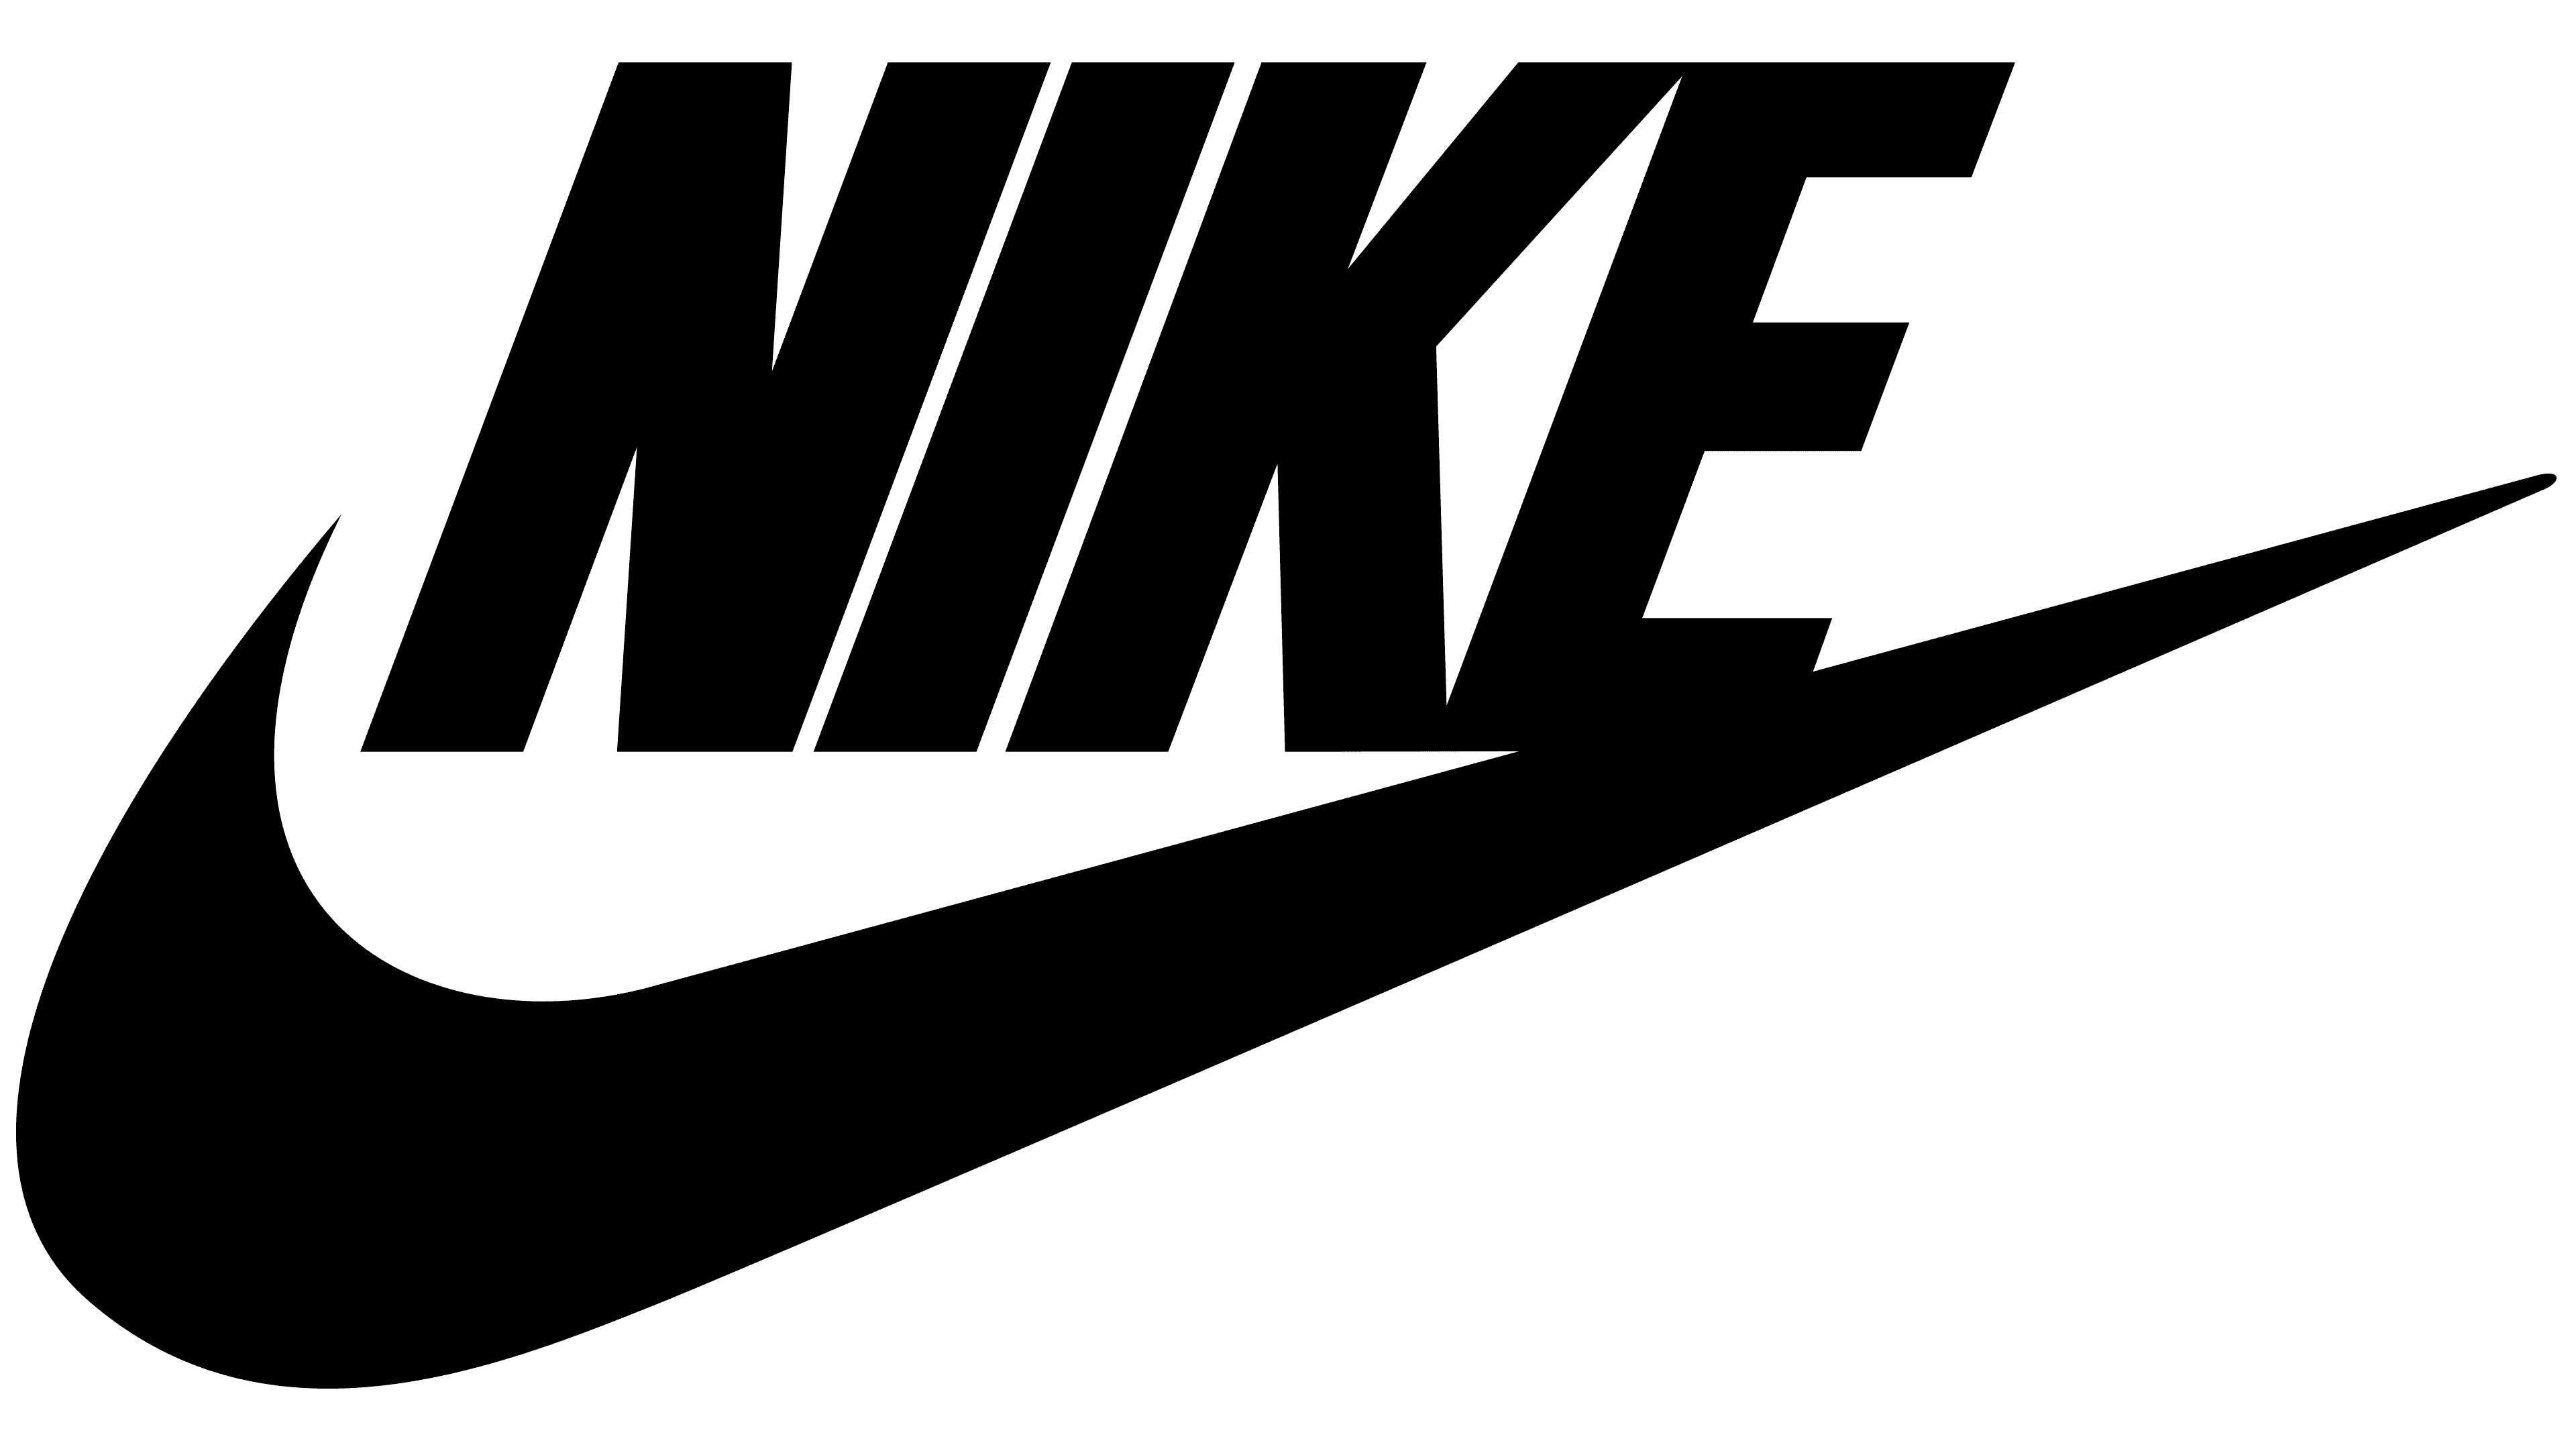 Nike's Swoosh